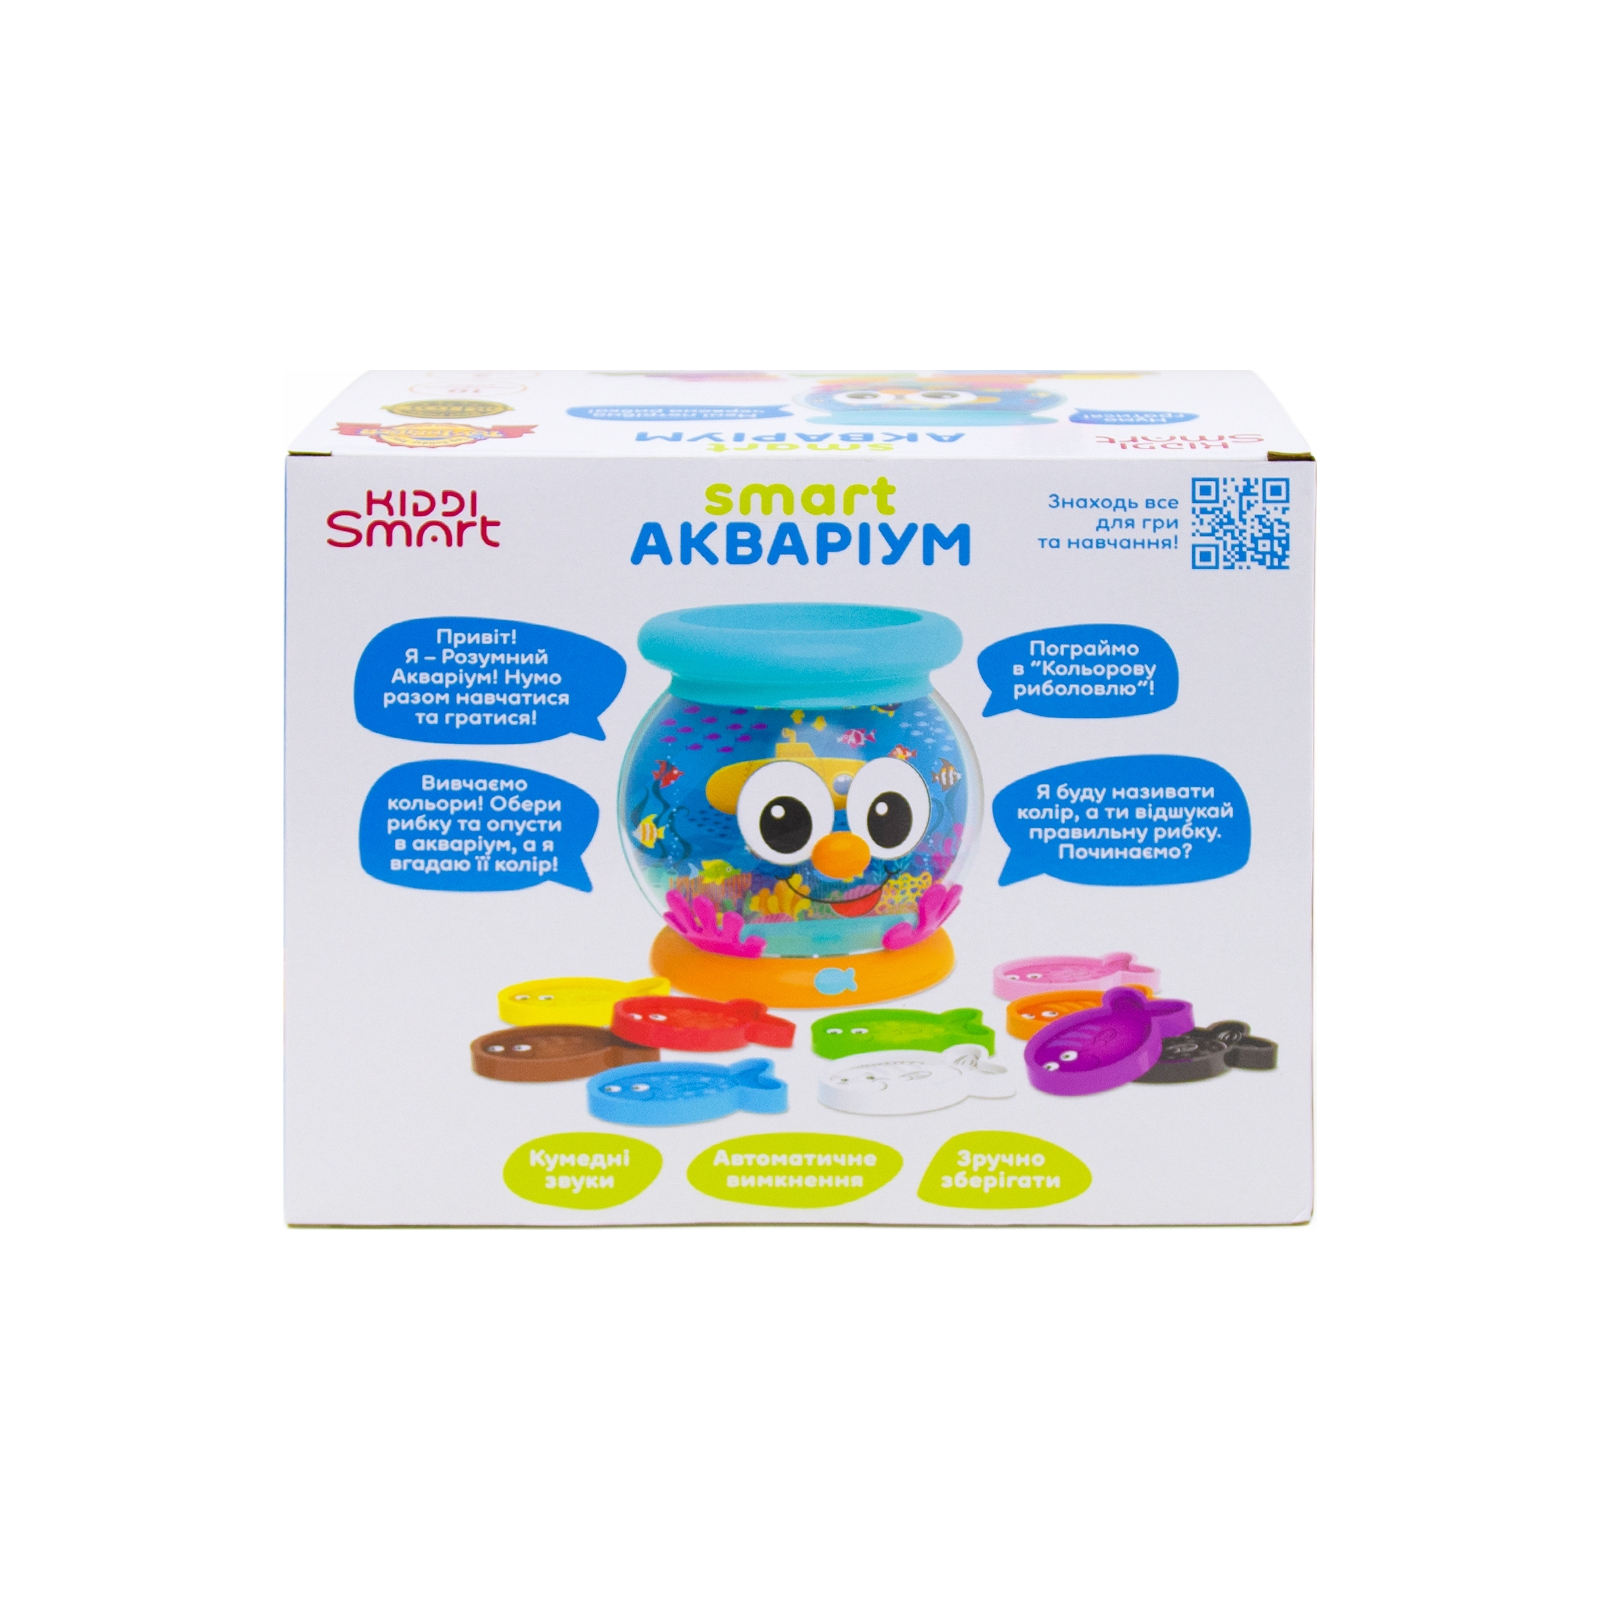 Развивающая игрушка Kiddi Smart Интерактивная обучающая игрушка Smart-Аквариум украинский и английский язык (207659) изображение 9